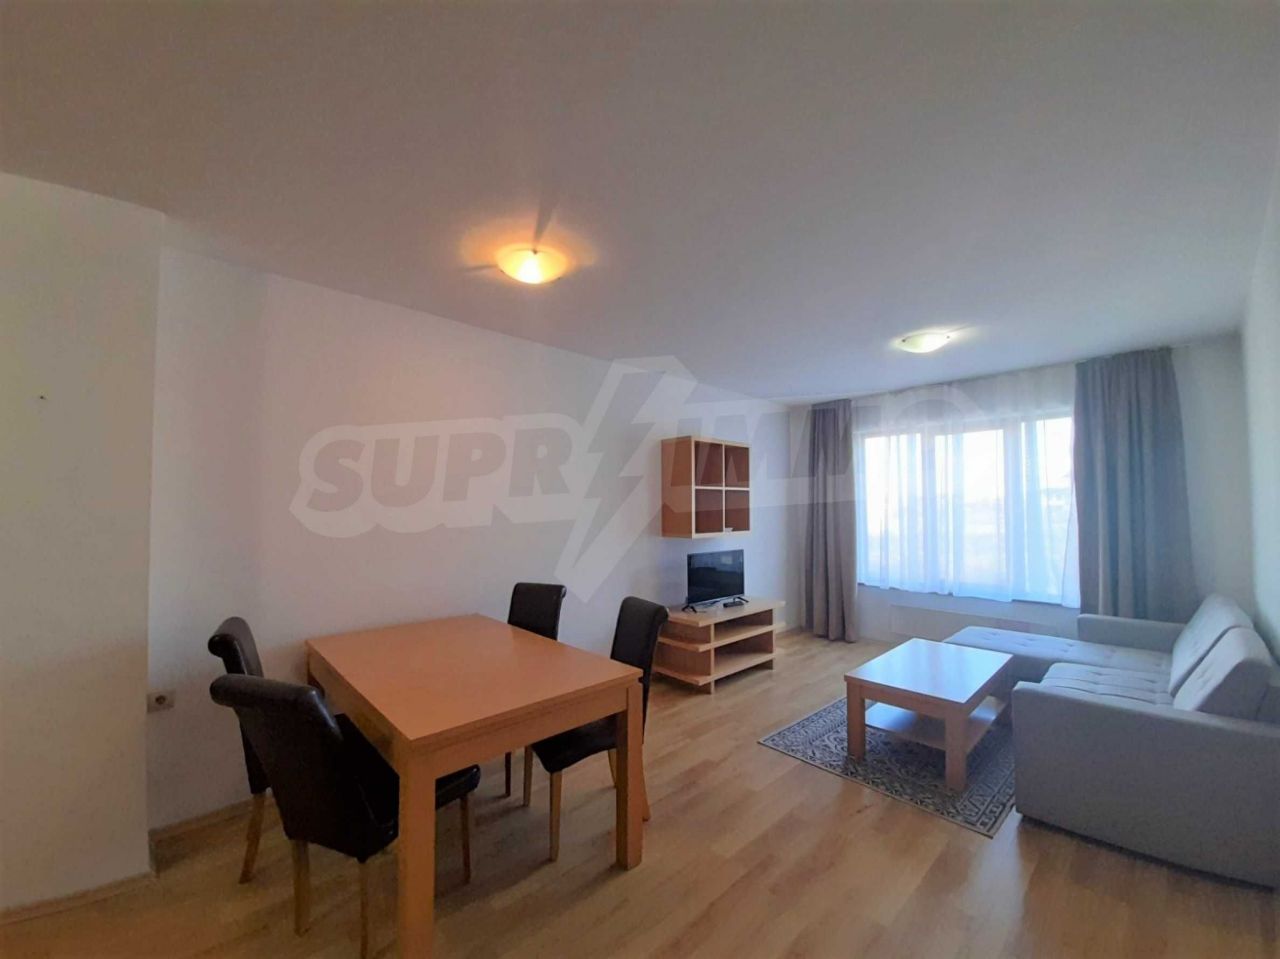 Apartment in Bansko, Bulgaria, 90 sq.m - picture 1